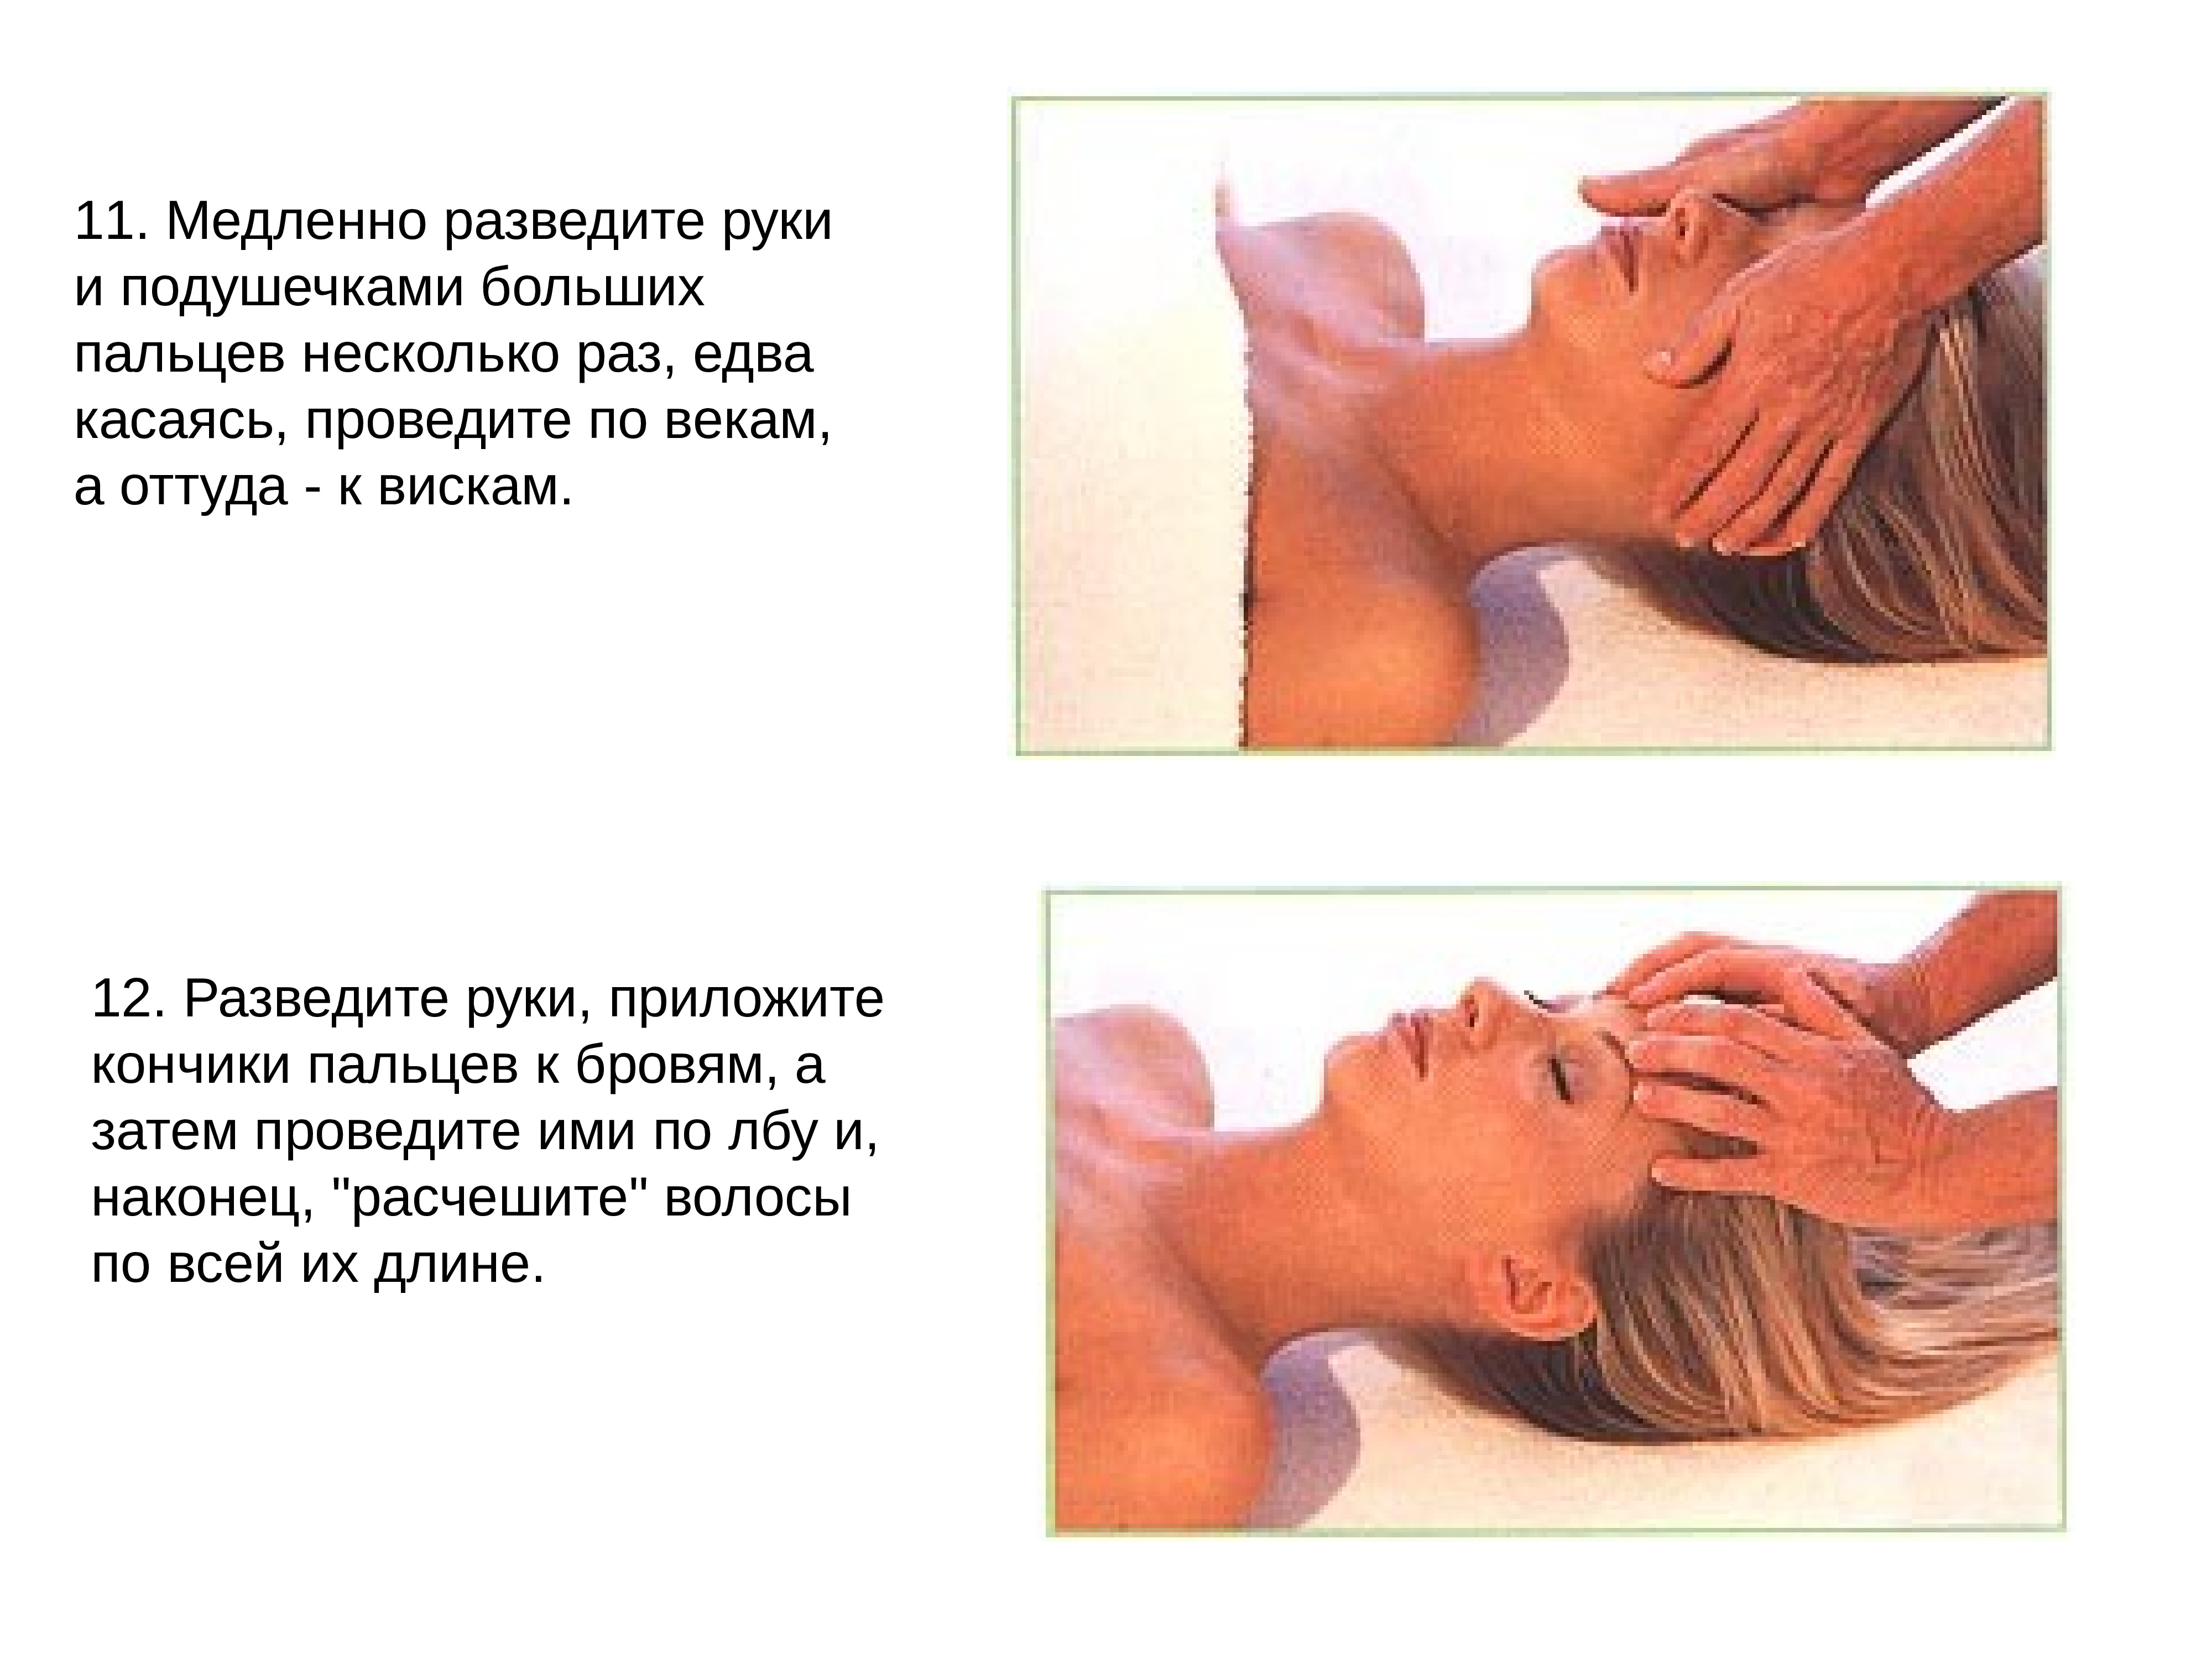 Массажные действия. Общий гигиенический массаж. Гигиенический массаж спины. Гигиенический массаж техника. Виды гигиенического массажа.